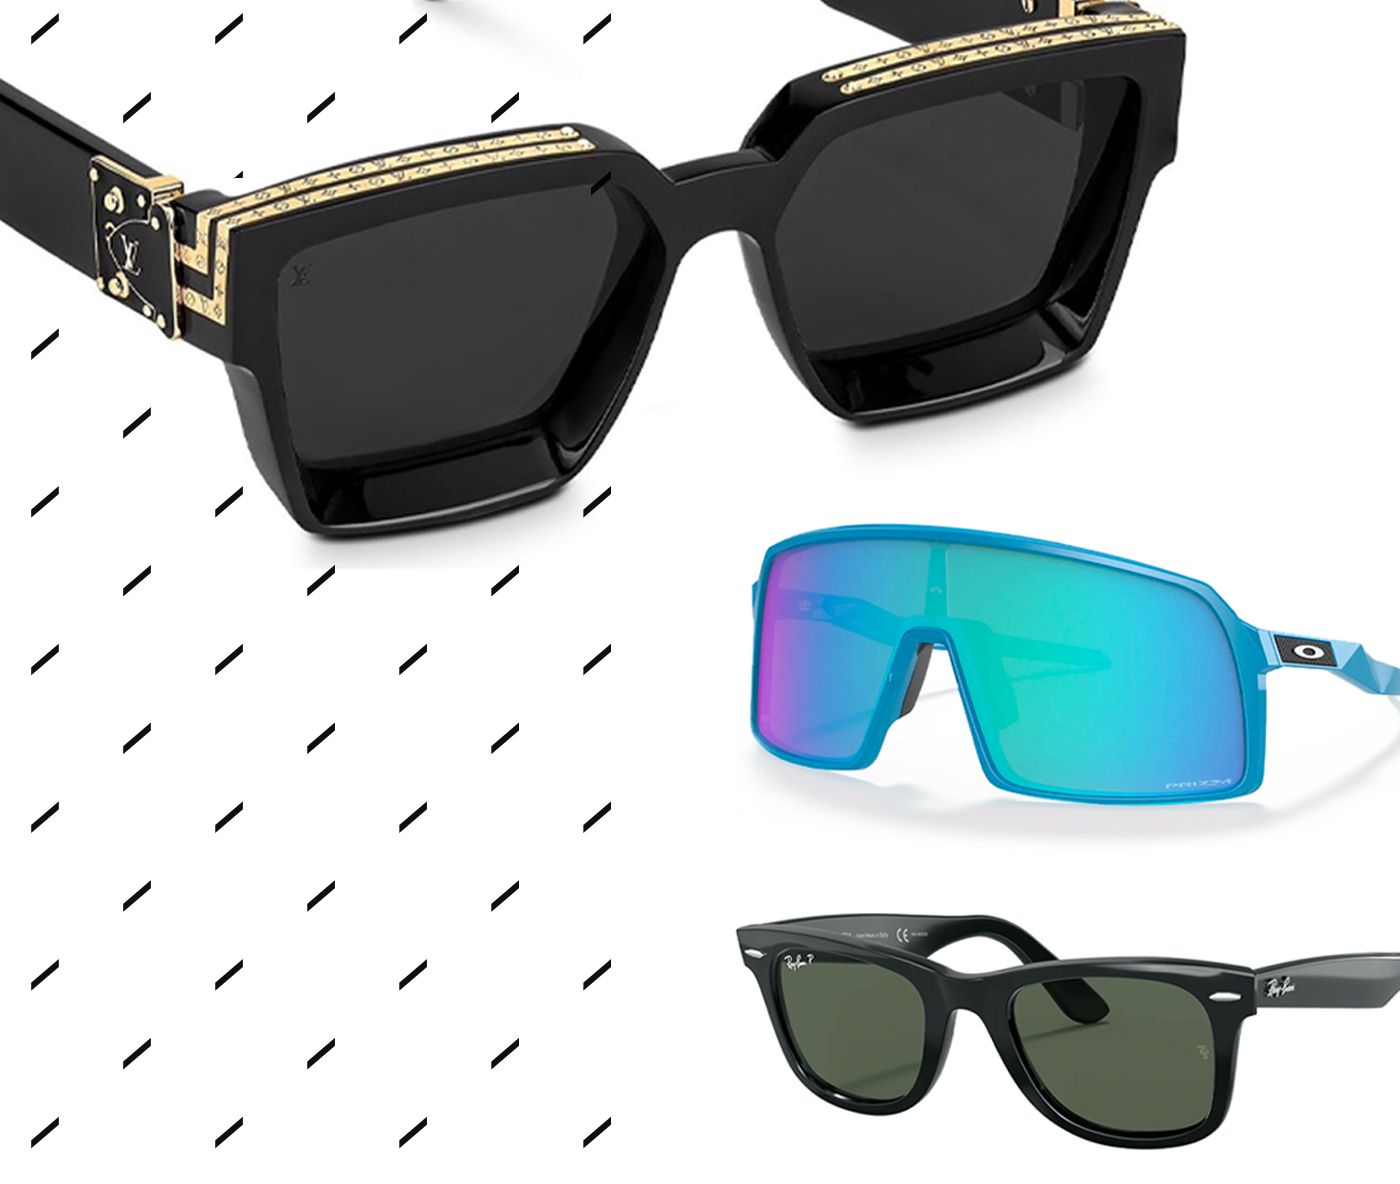 Productos Louis Vuitton: 1.1 Millionaires Sunglasses